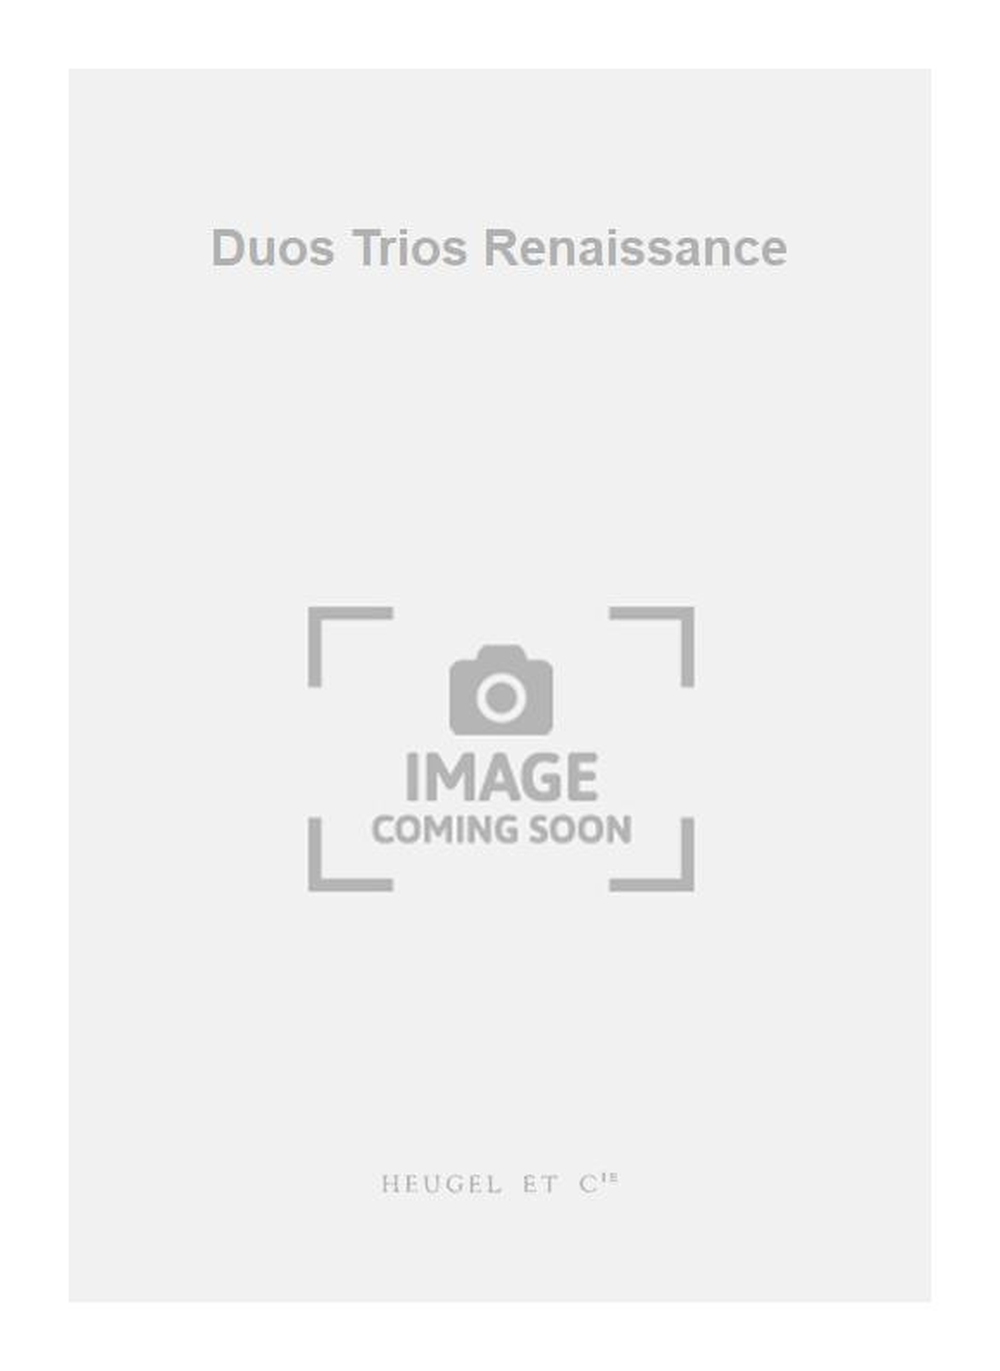 Jhan Gro: Duos Trios Renaissance